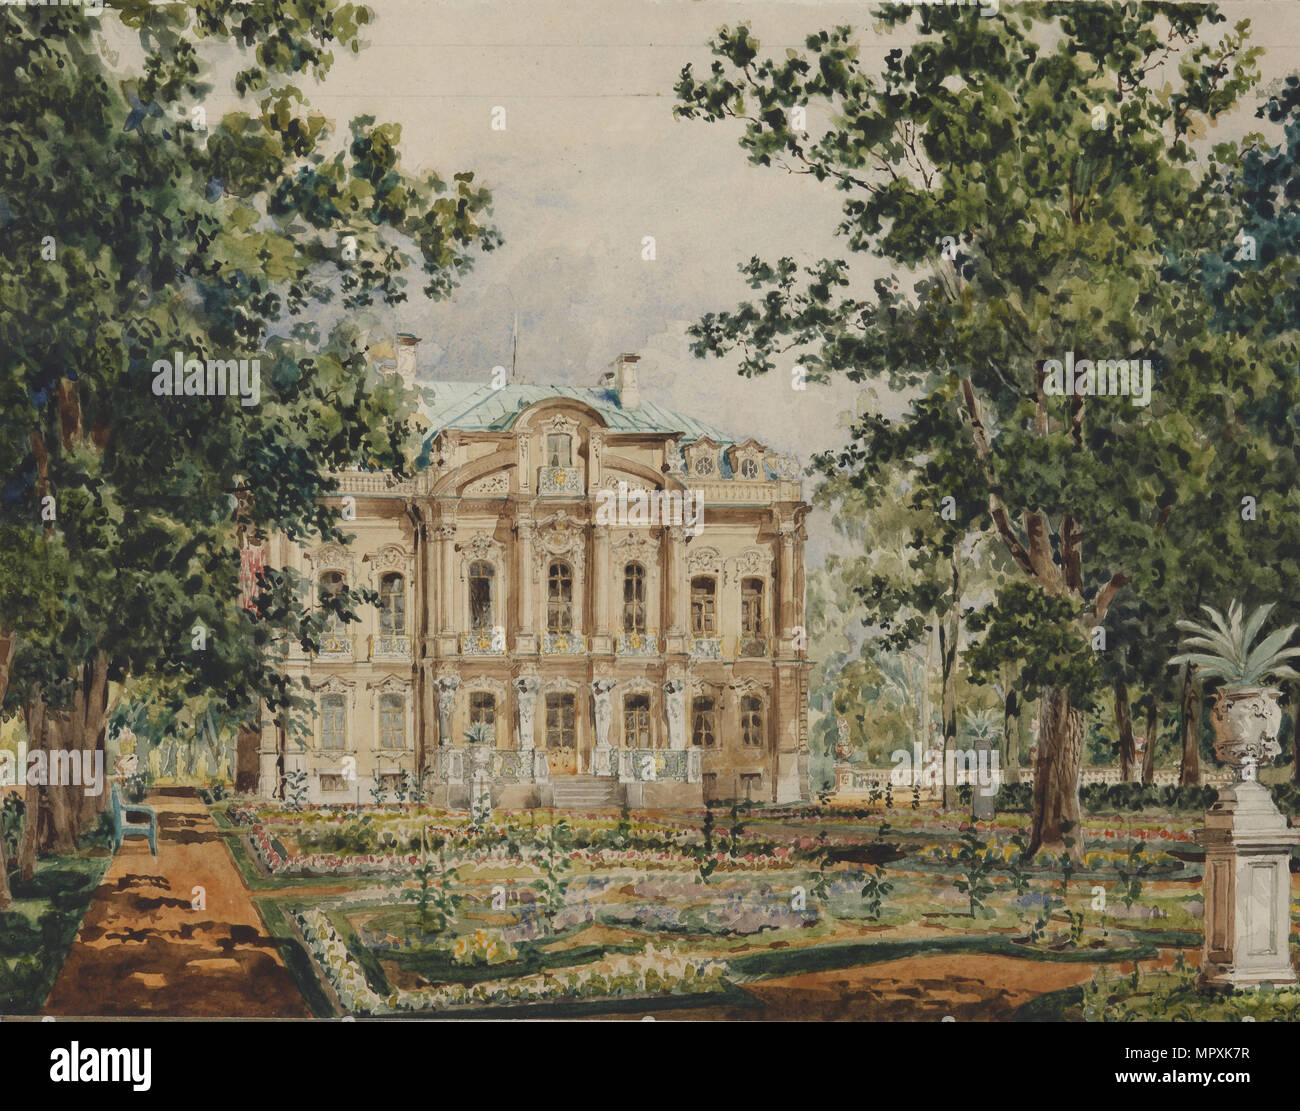 Dacha proprie dell'Imperatore Alessandro II A Peterhof , 1850s. Foto Stock